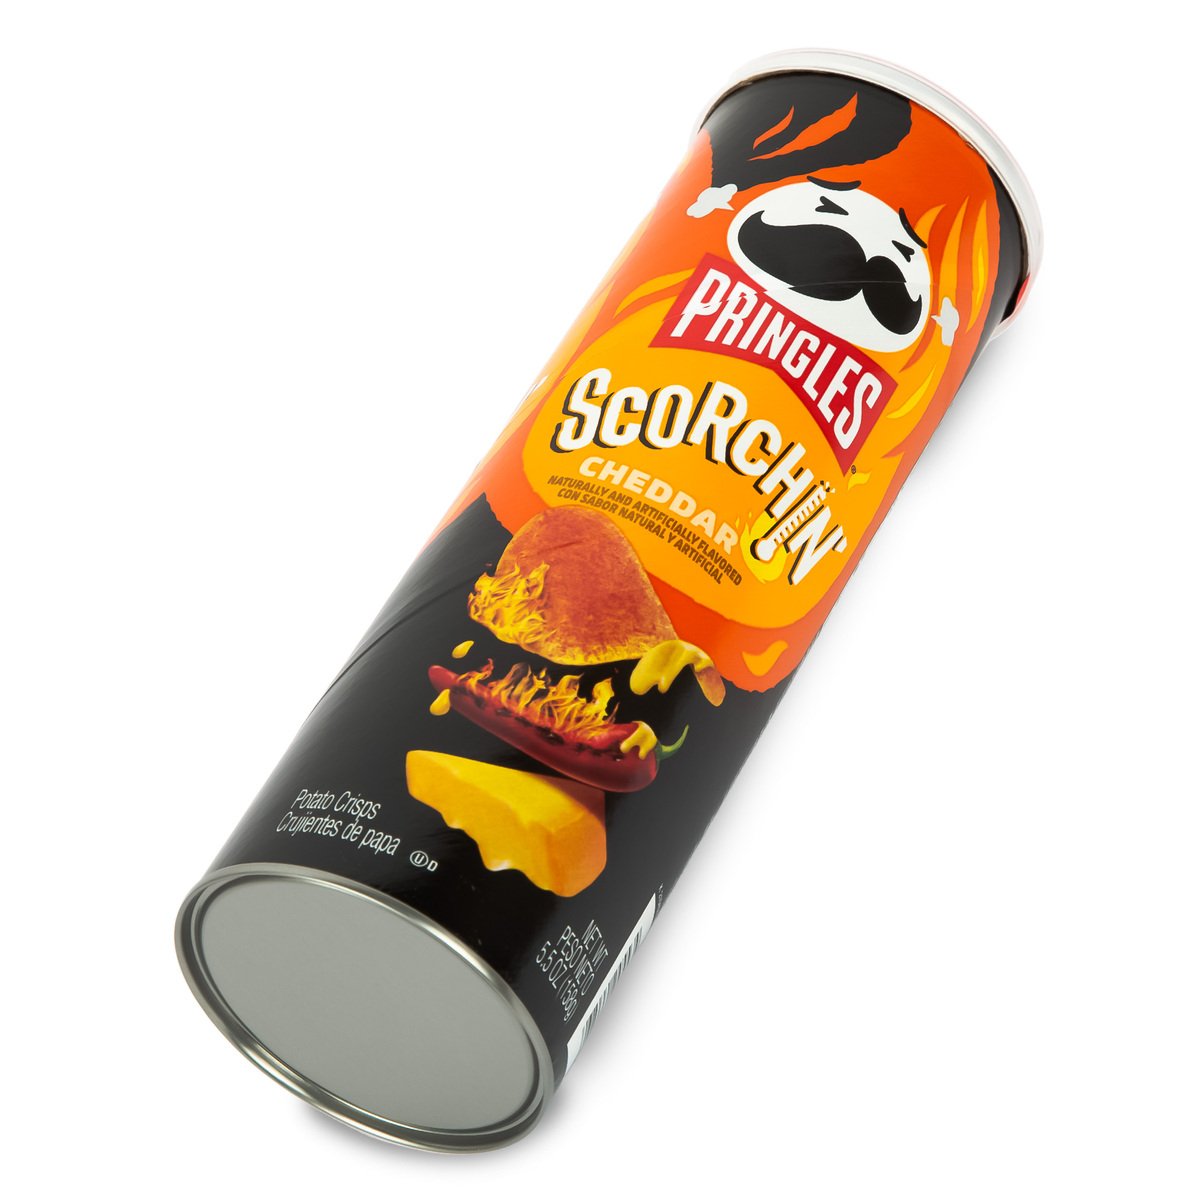 Pringles Scorchin Cheddar Potato Crisp 158g